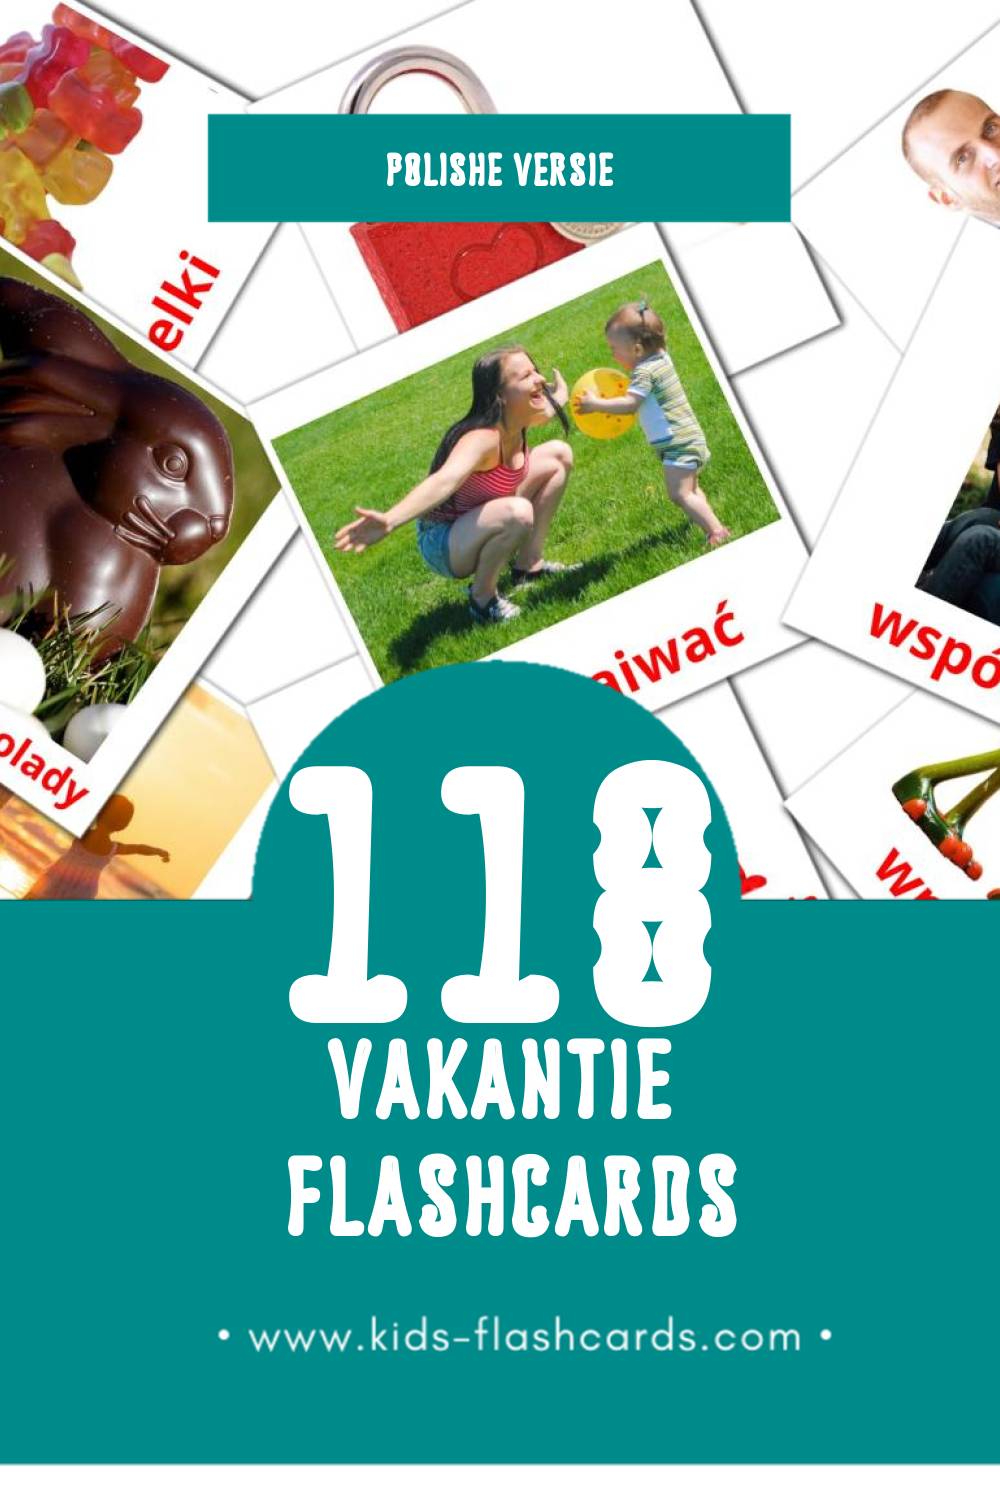 Visuele Święta Flashcards voor Kleuters (118 kaarten in het Polish)